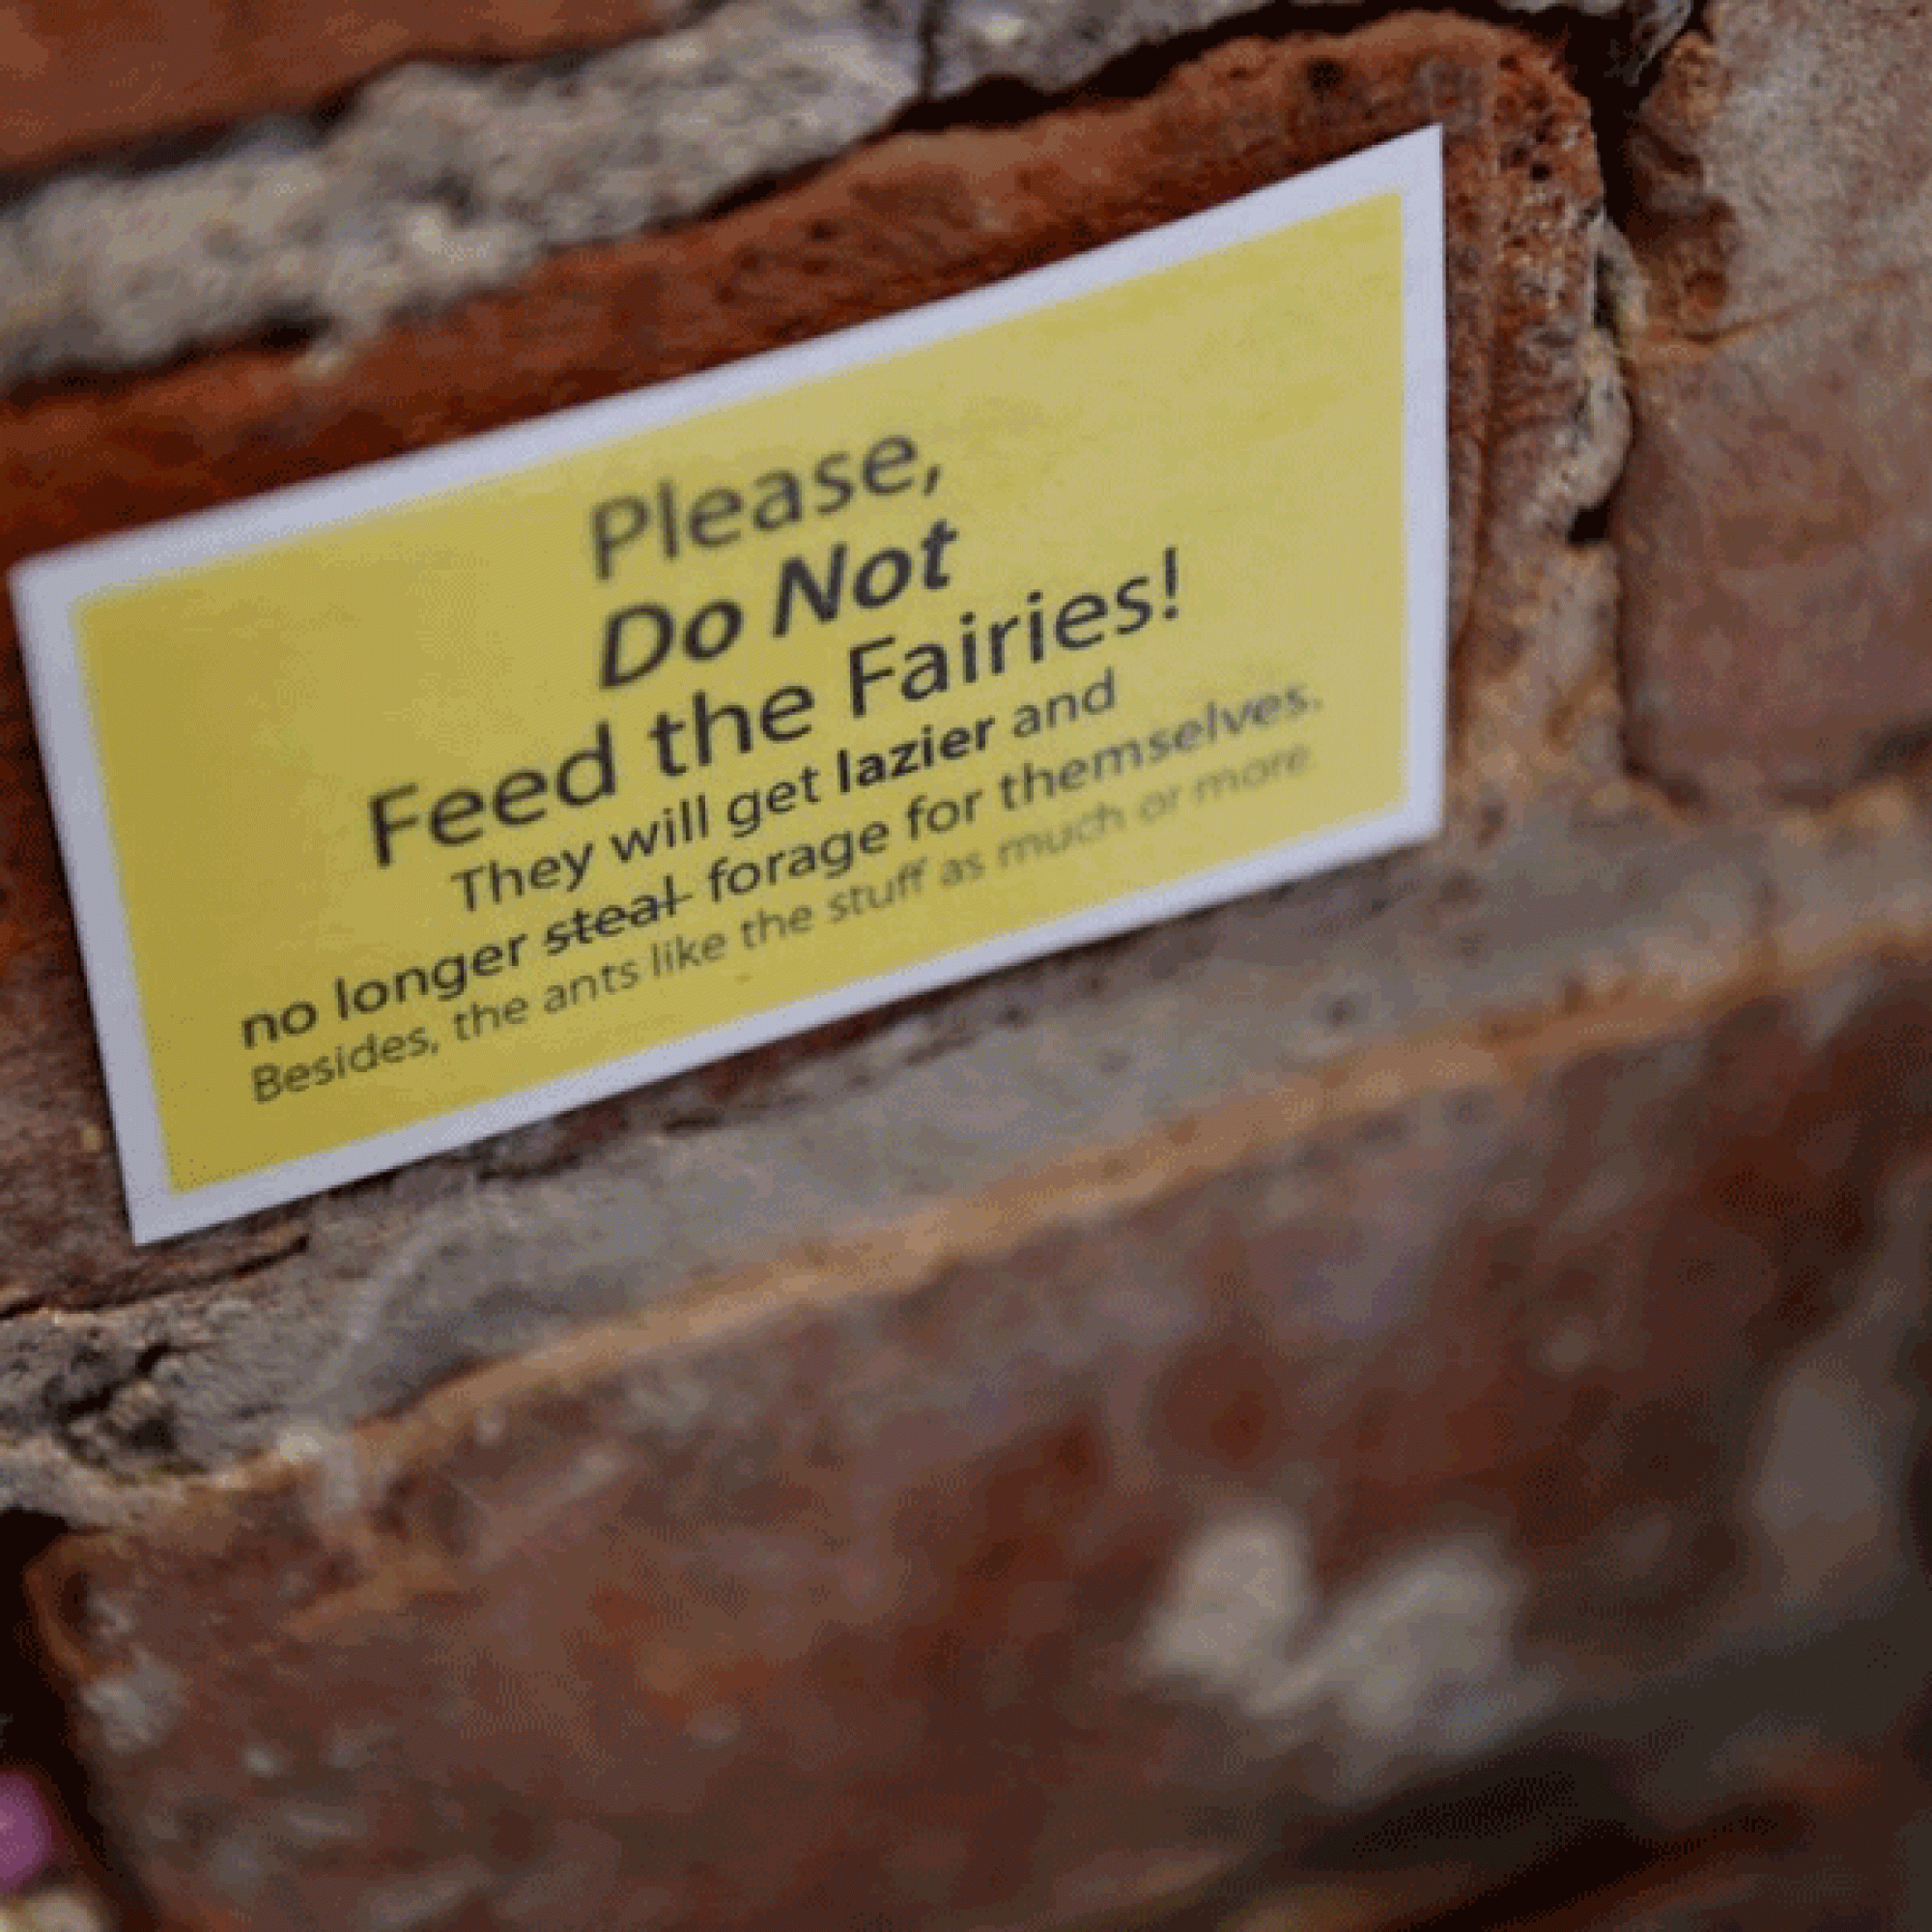 Offenbar sollten die Feen nicht gefüttert werden. (Bild: The Ann Arbor News)